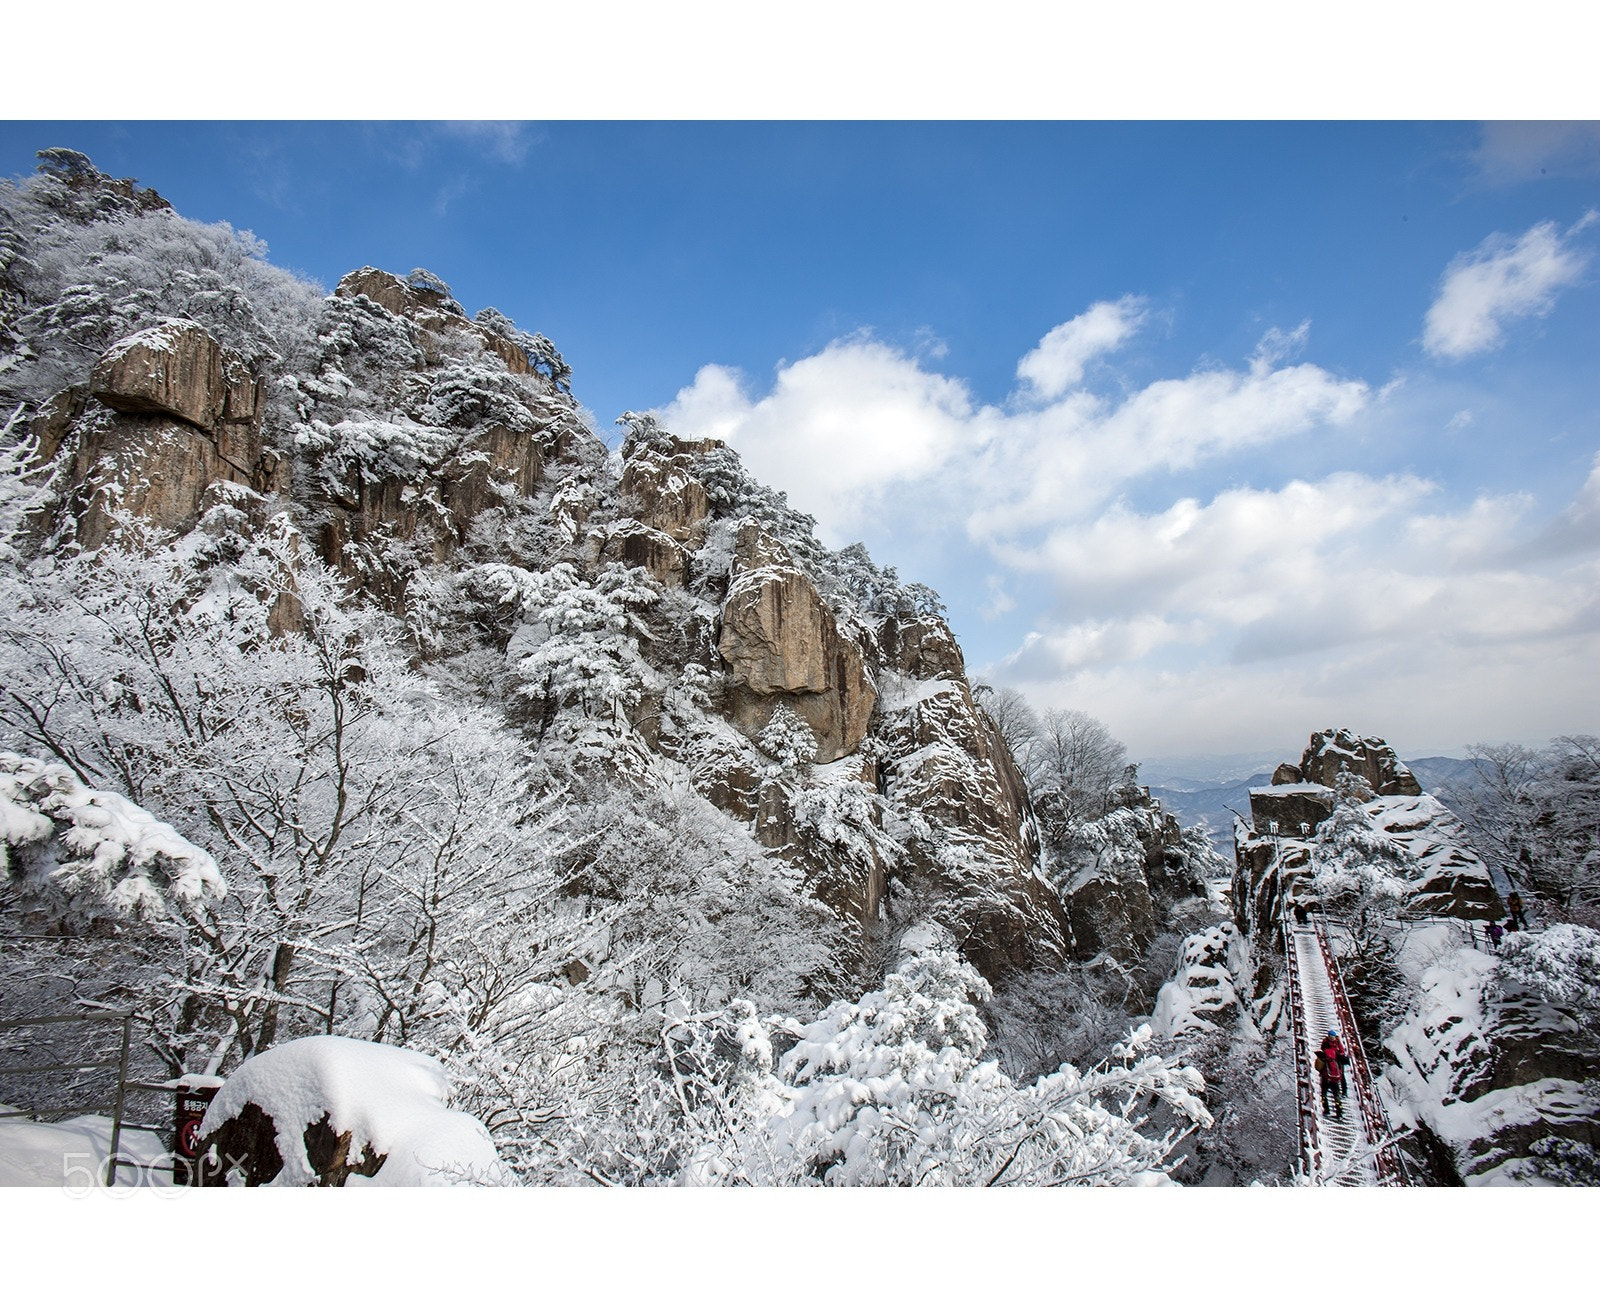 Canon EOS-1Ds Mark III sample photo. Dawdeun mountain snow falls photography